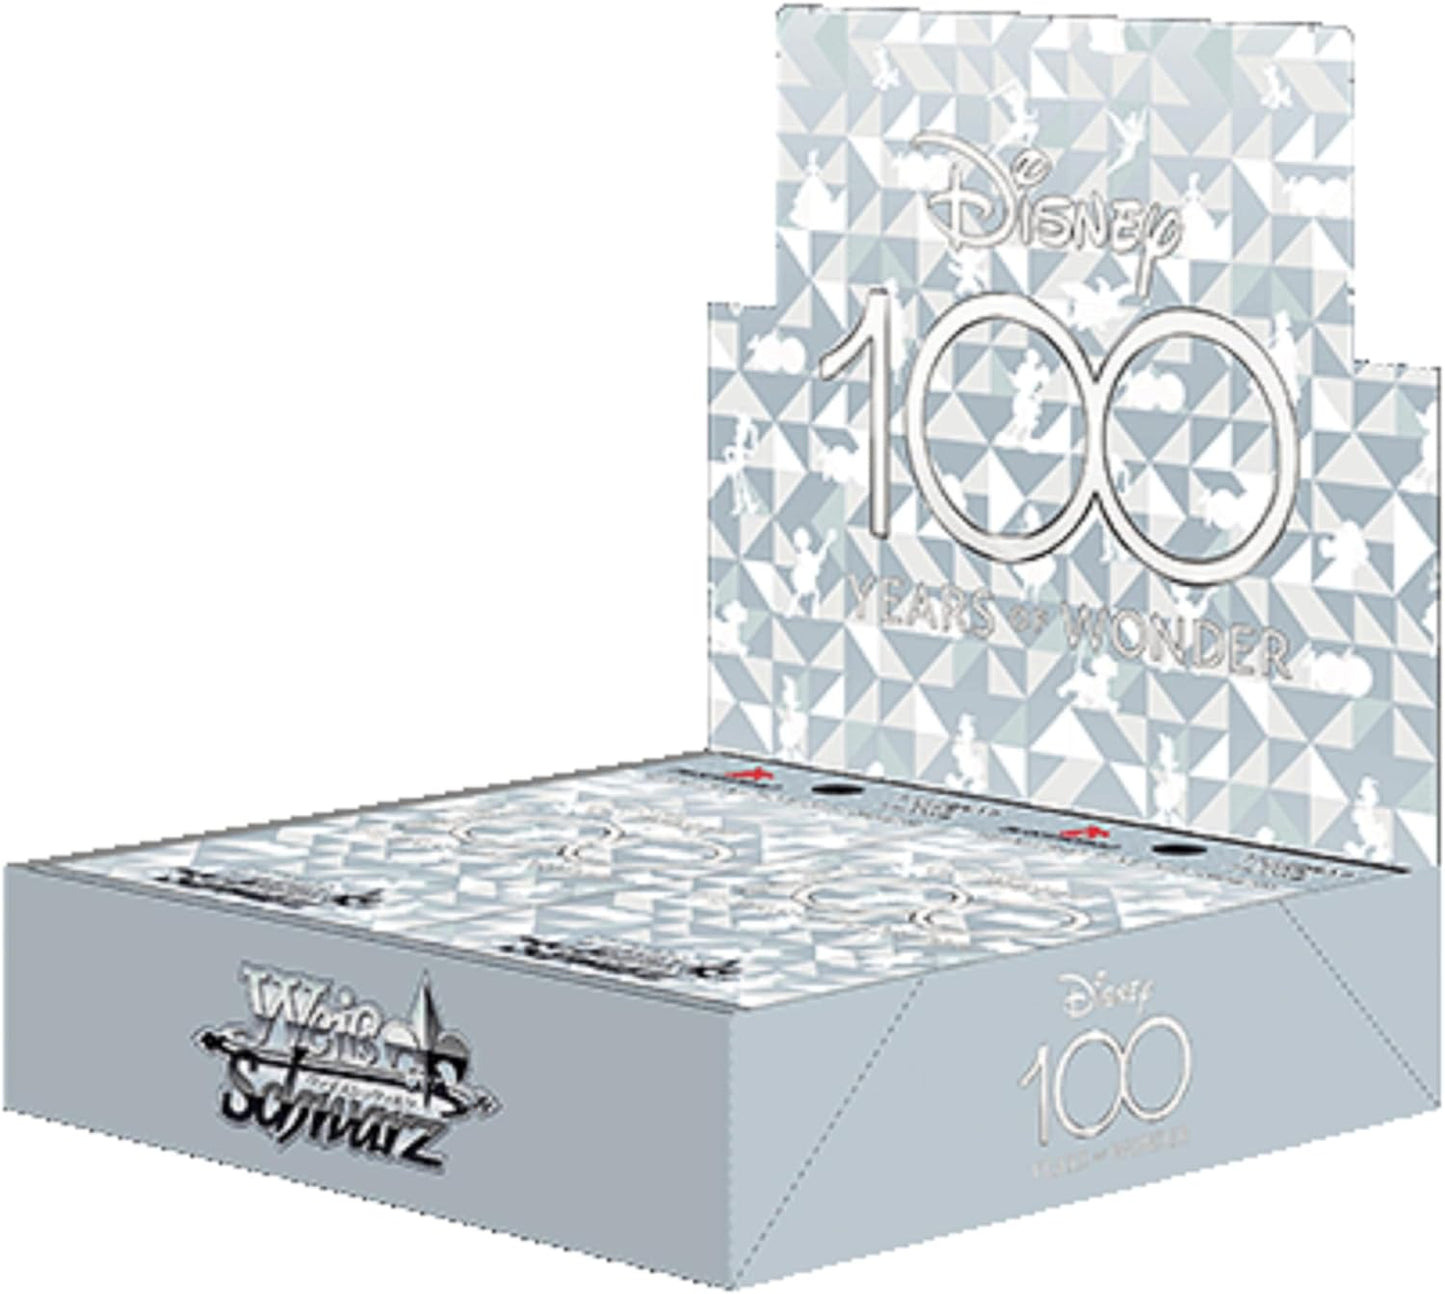 Weiss Schwarz Booster Pack Disney100 (Box/16pack)